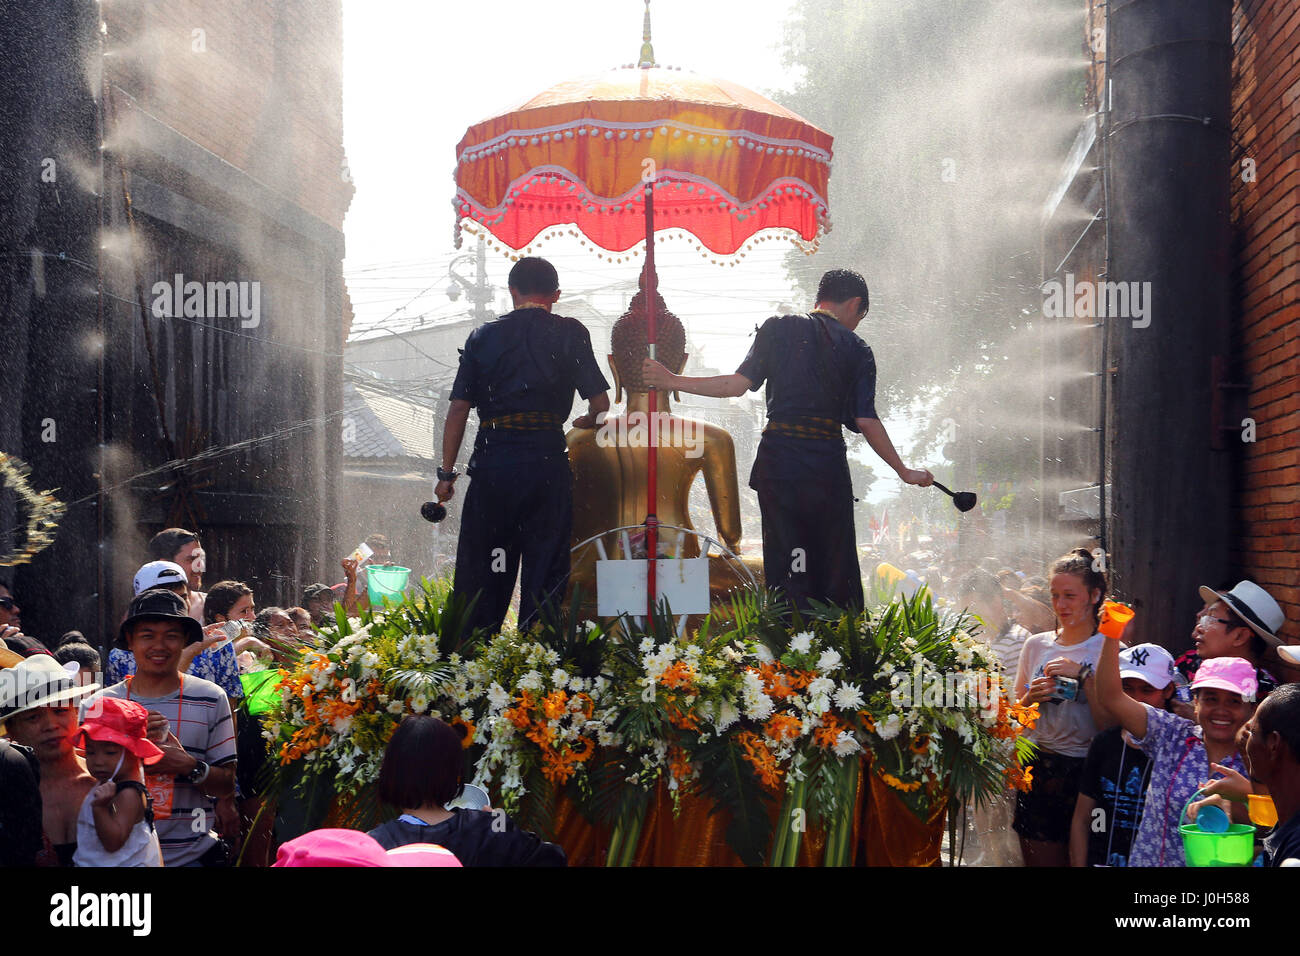 Chiang Mai, Thaïlande. 13 avril 2017. Le premier jour de Songkran, le Nouvel An thaï, a commencé par une lutte d'eau massive dans la région de Chiang Mai, qui durera trois jours. La tradition vient de verser une petite quantité d'eau sur une statue de Bouddha, ou les moines, de recevoir une bénédiction en retour. Maintenant les bénédictions coulent librement et plutôt que d'une petite pincée de l'eau, peut être administré par flexible, seau de même super soaker les pistolets à eau. Crédit : Paul Brown/Alamy Live News Banque D'Images